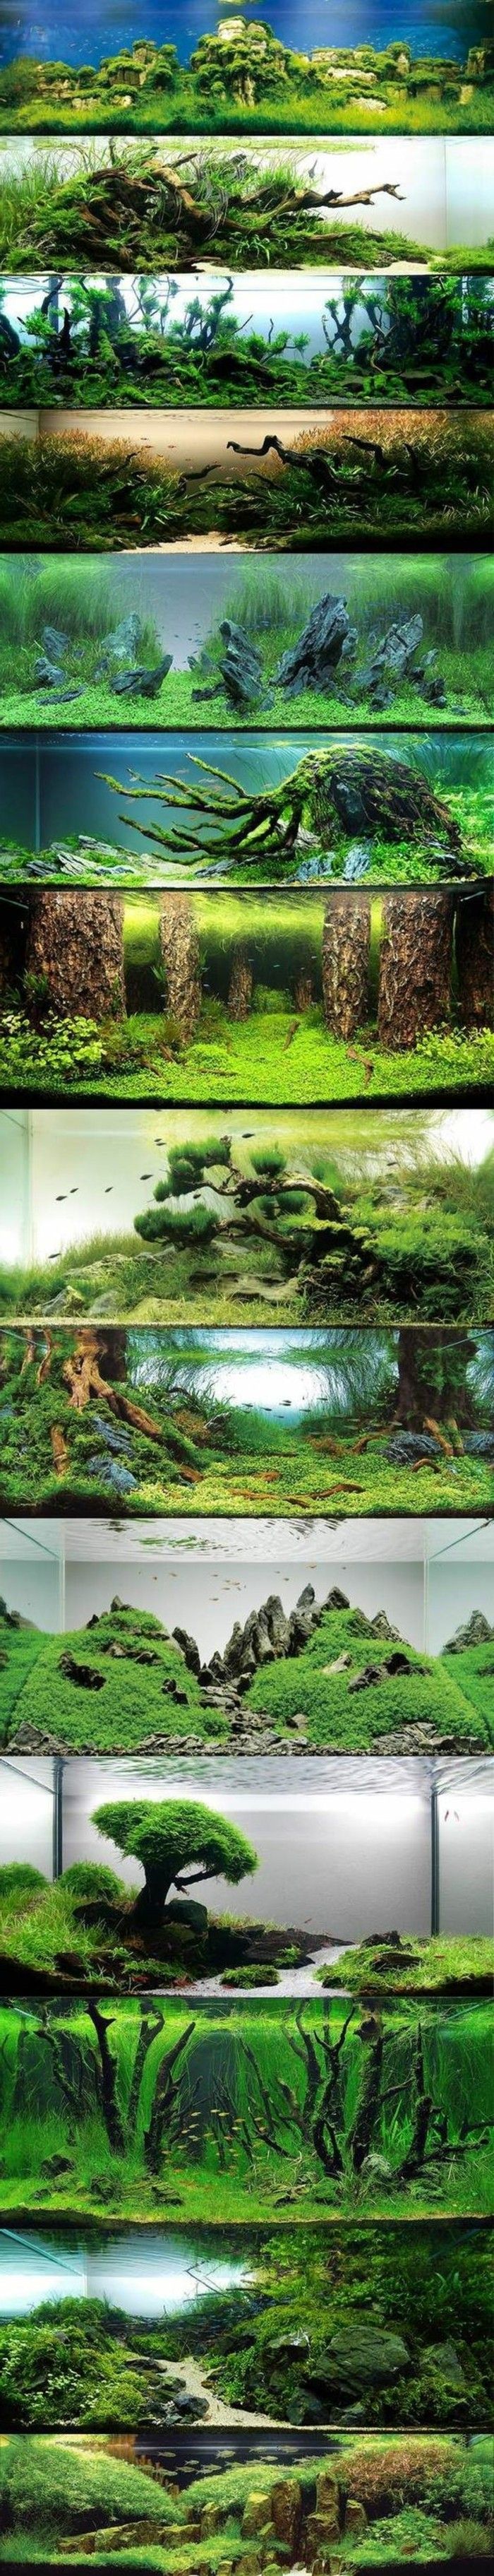 akvarium-Design-bäst-idéer-fotokollage-världen-med-vatten-sjögräs